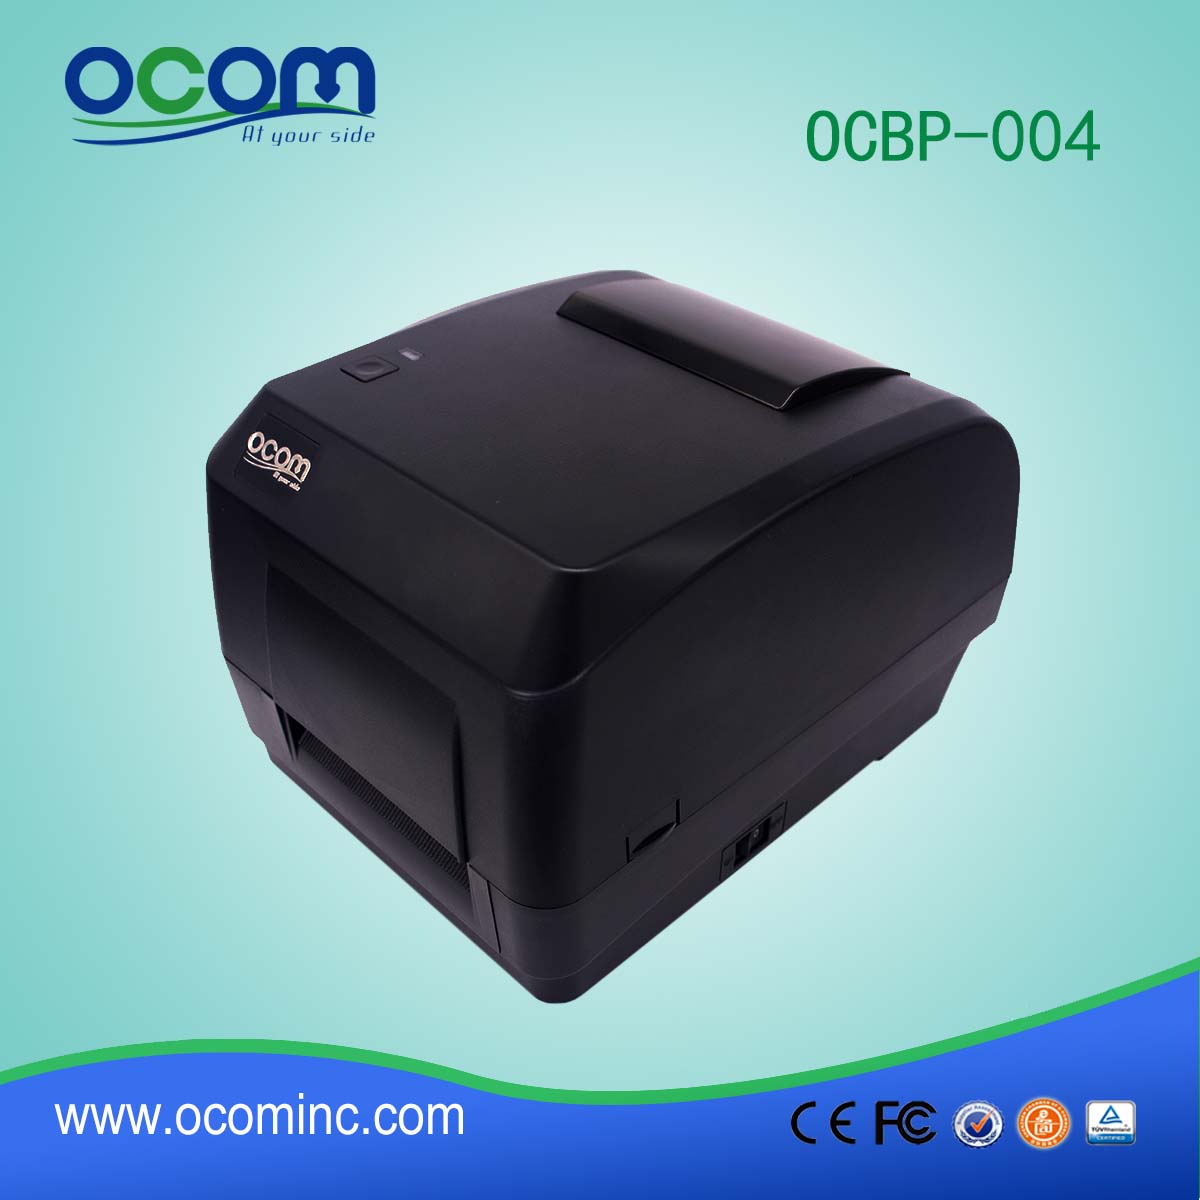 Impresora de etiquetas de código de barras para transferencia térmica de modelo nuevo OCBP-004A-U